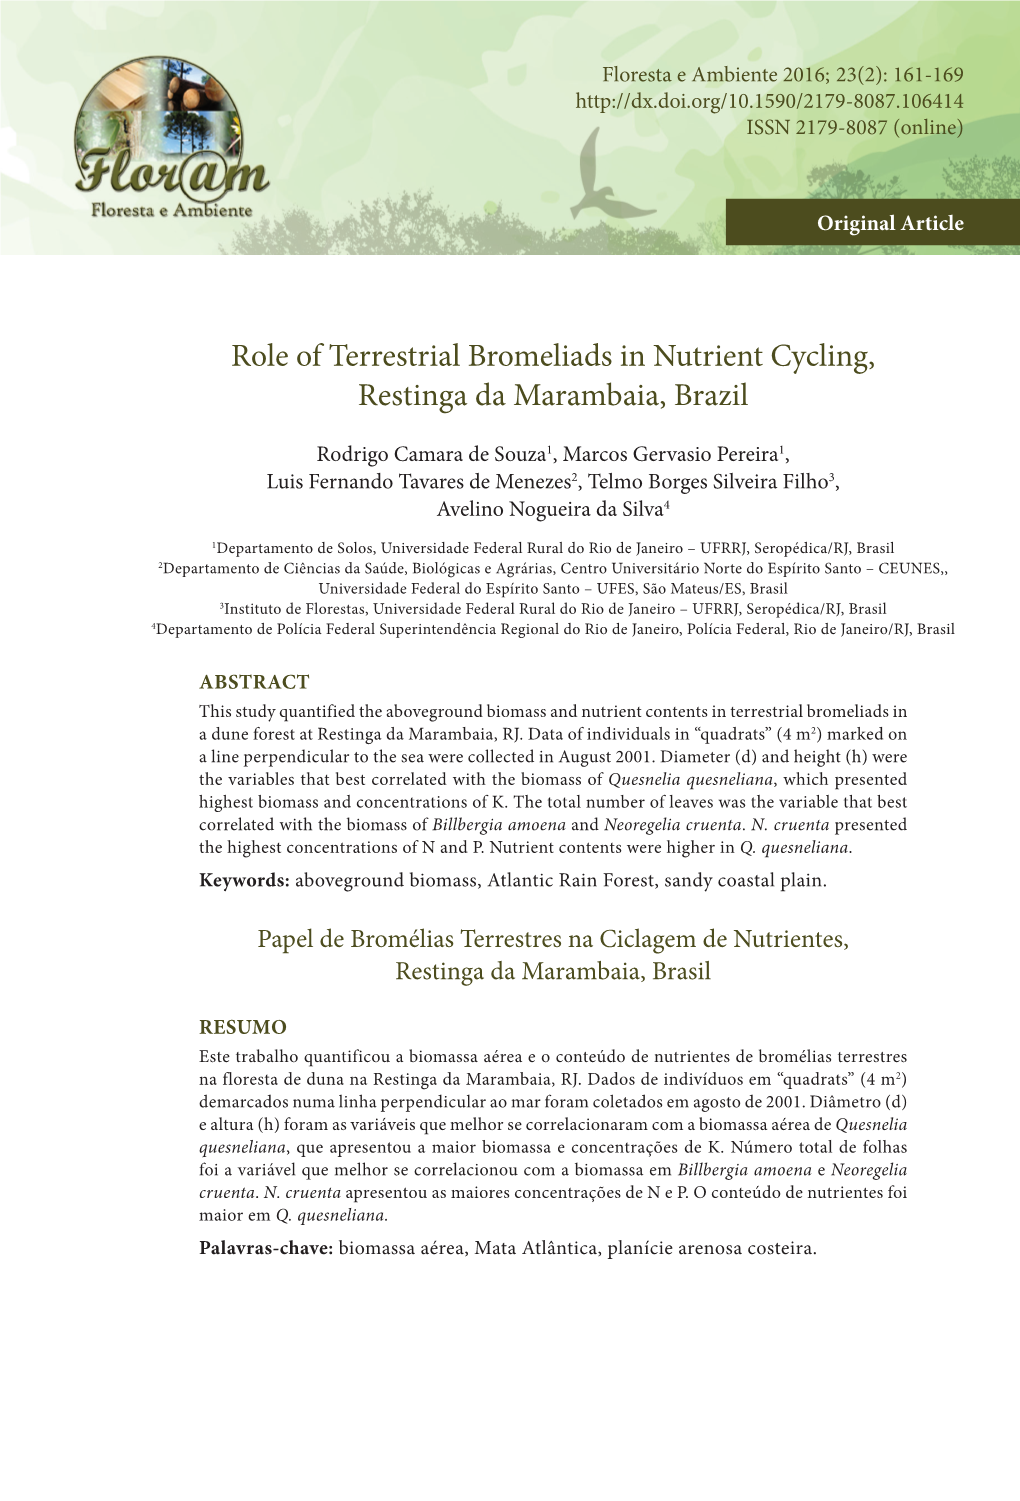 Role of Terrestrial Bromeliads in Nutrient Cycling, Restinga Da Marambaia, Brazil